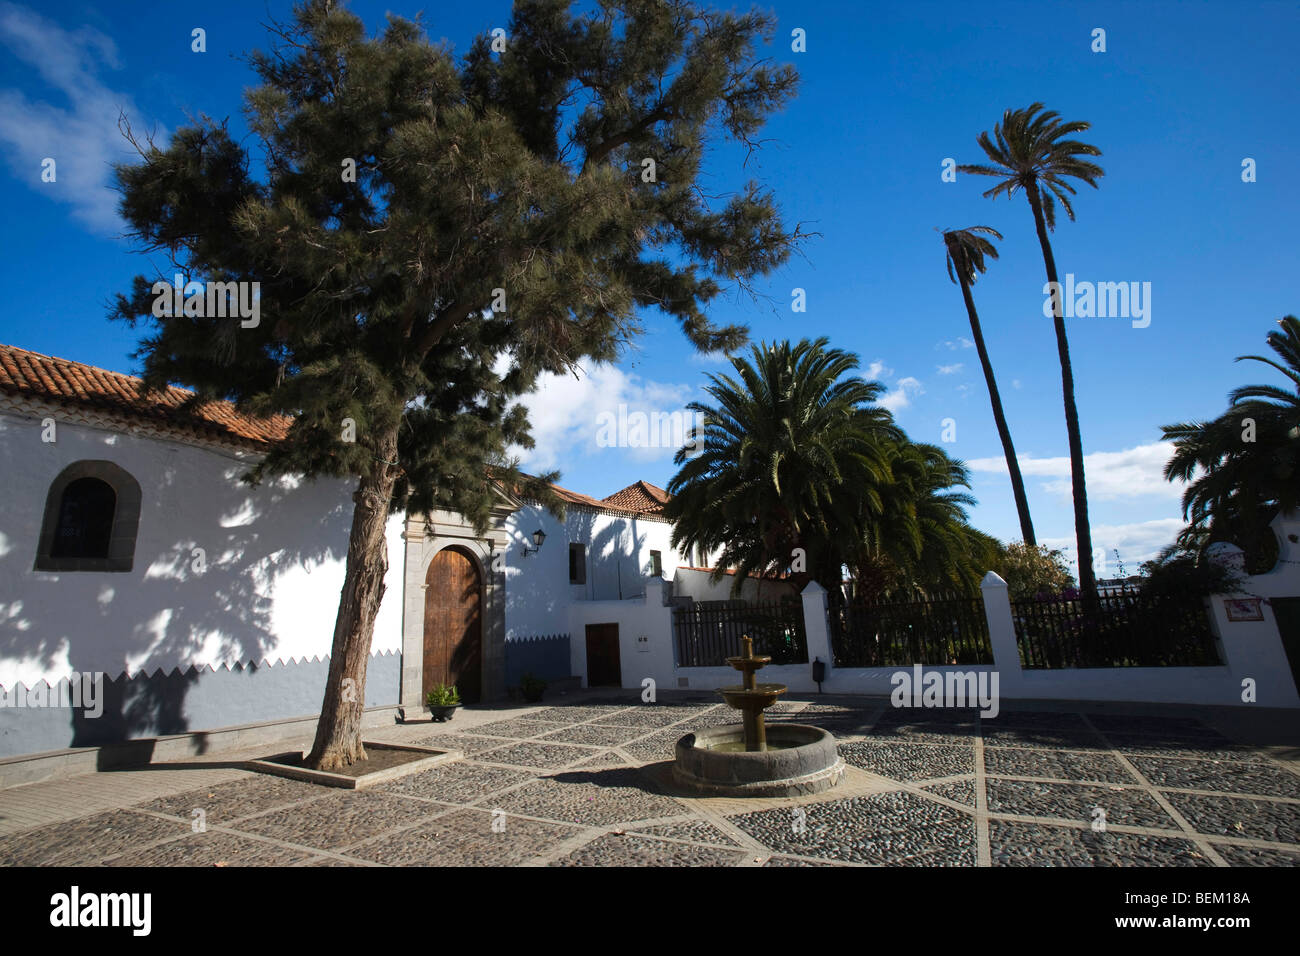 La città antica di Telde, San Francisco square, Gran Canaria, Isole Canarie, Spagna, Europa Foto Stock